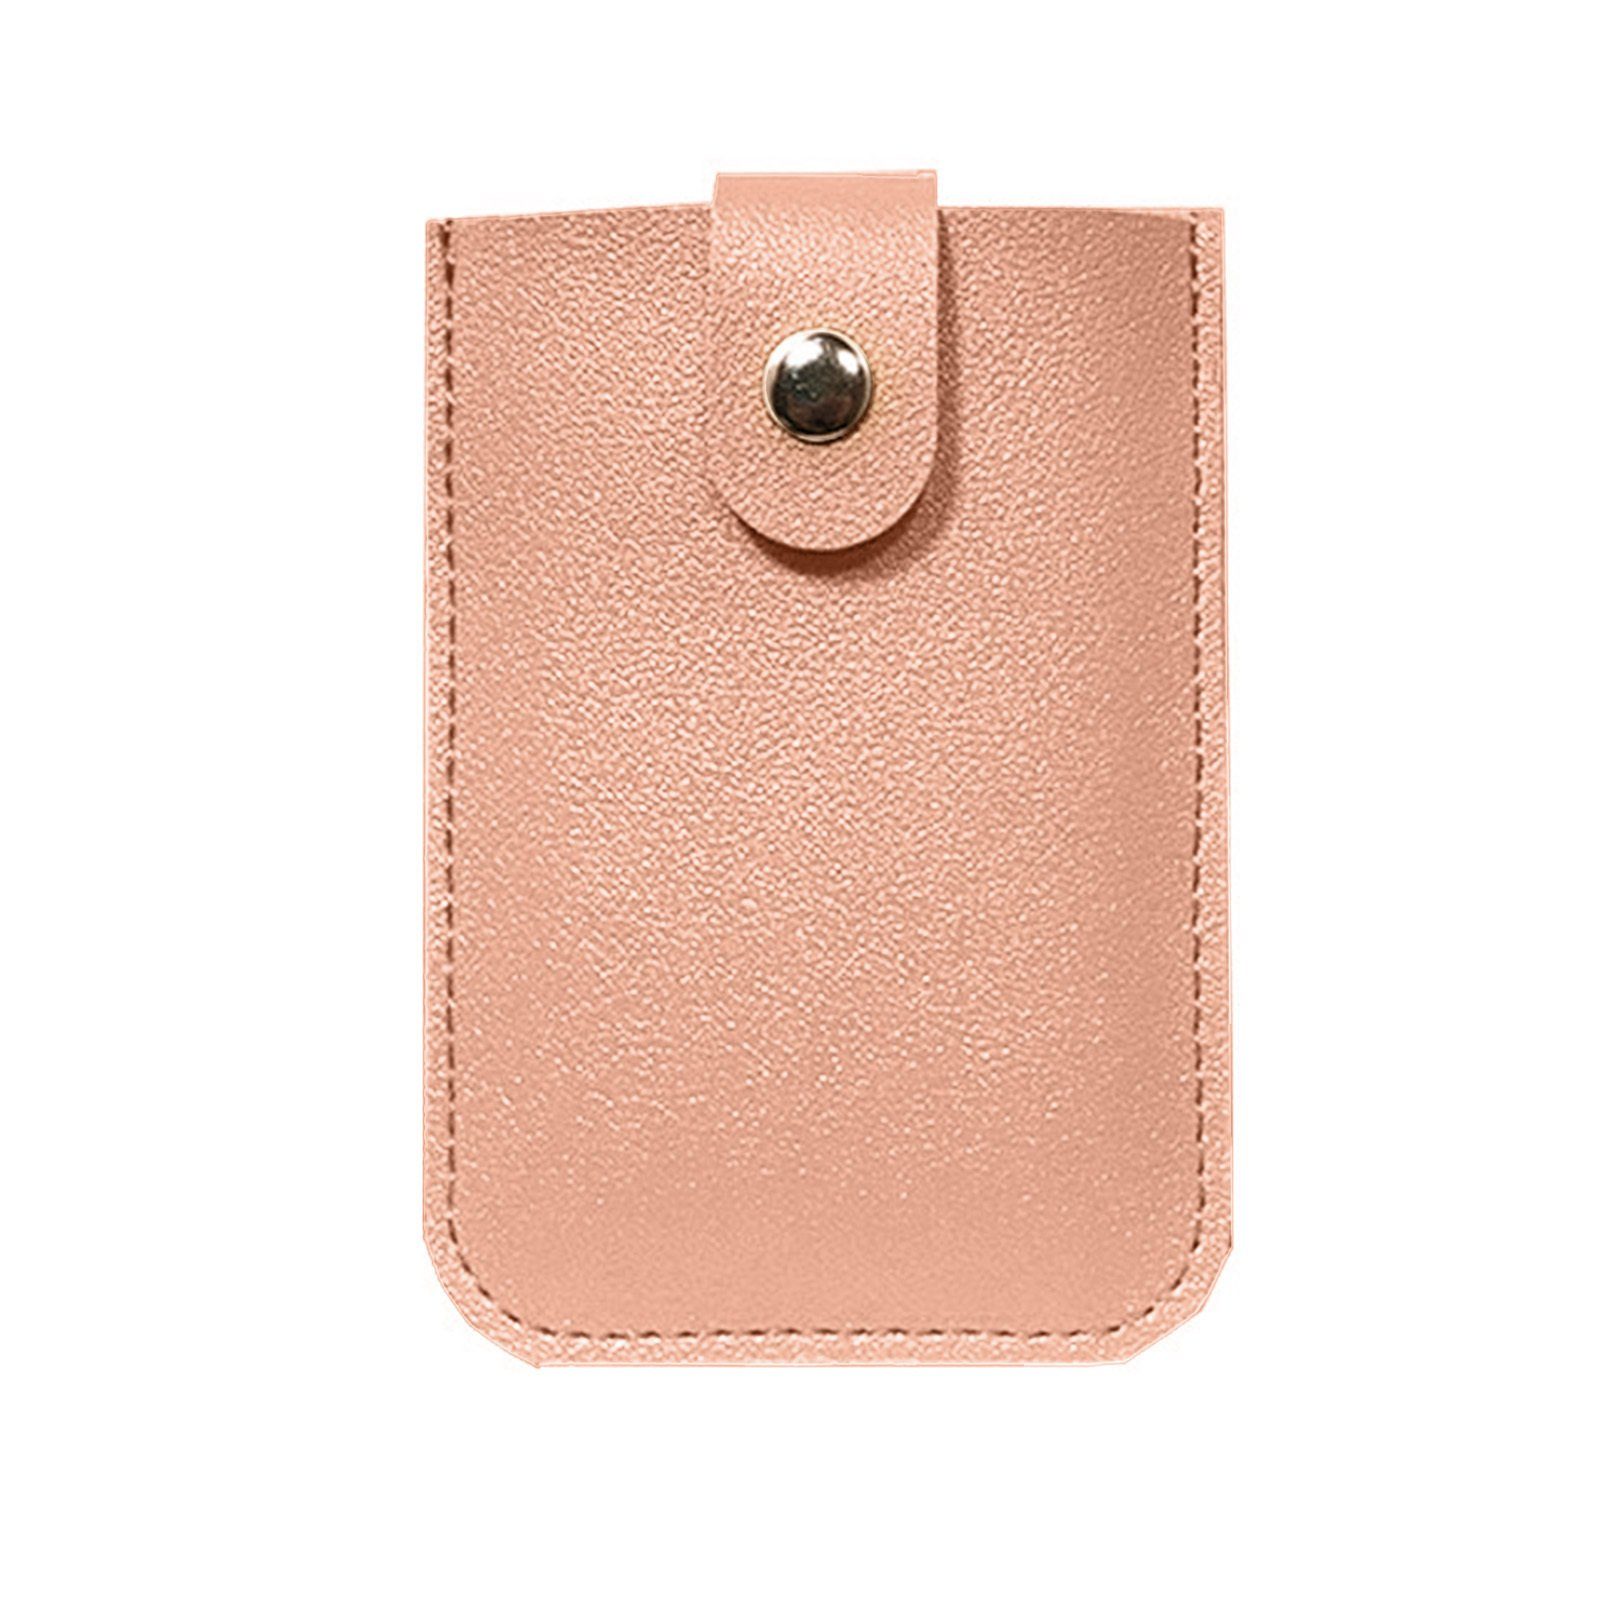 Blusmart Mini Geldbörse Ausziehbarer Kartenhalter pink 6 Fächern, Mit Tragbares